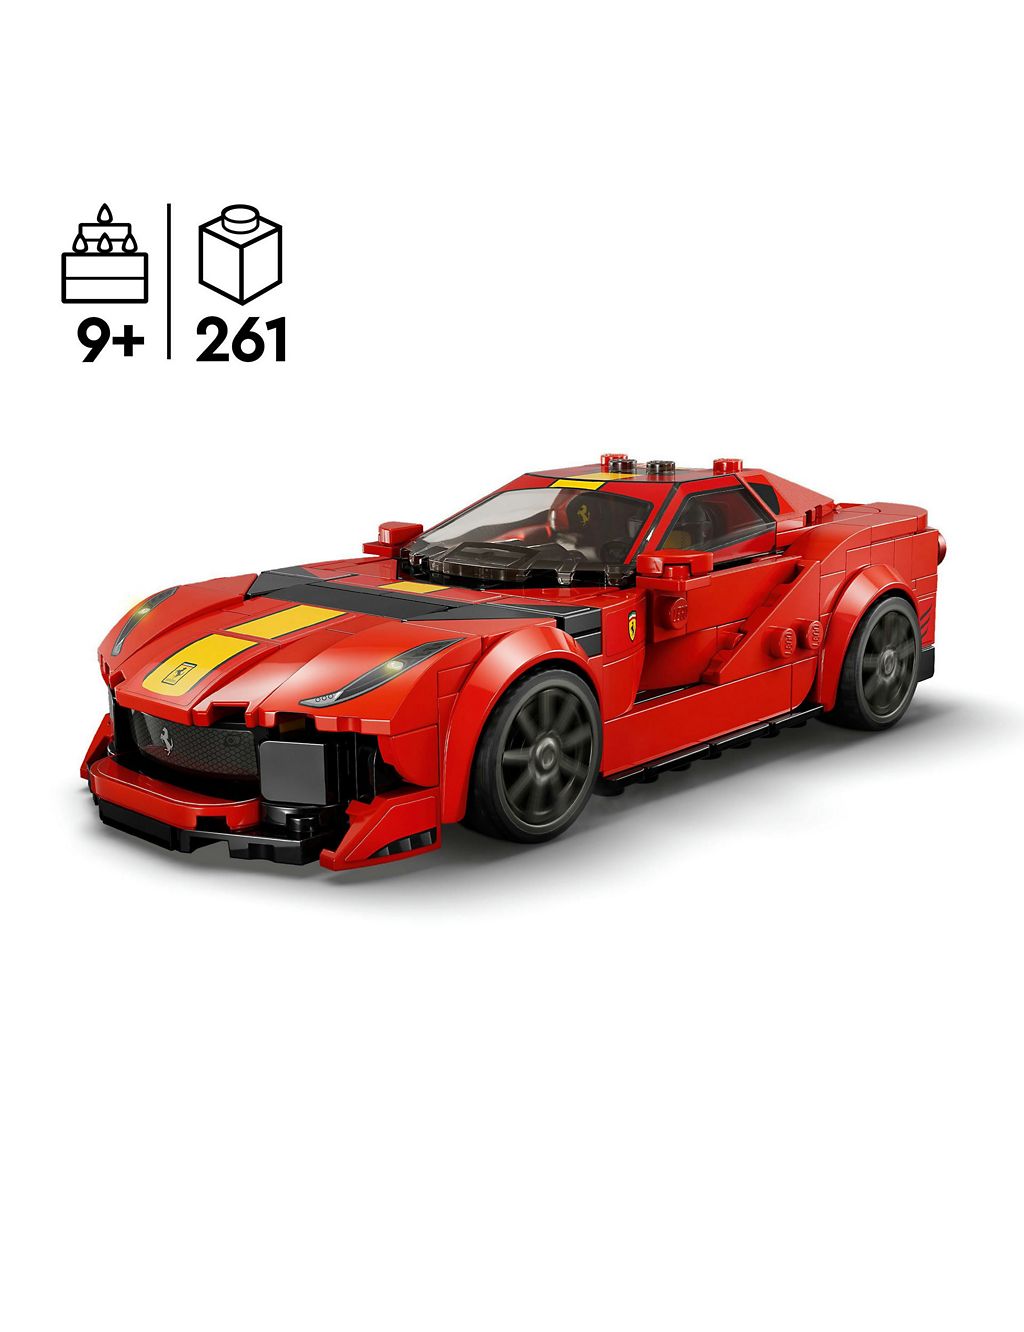 LEGO Speed Champions Ferrari 812 Competizione (9+ Yrs) 1 of 6